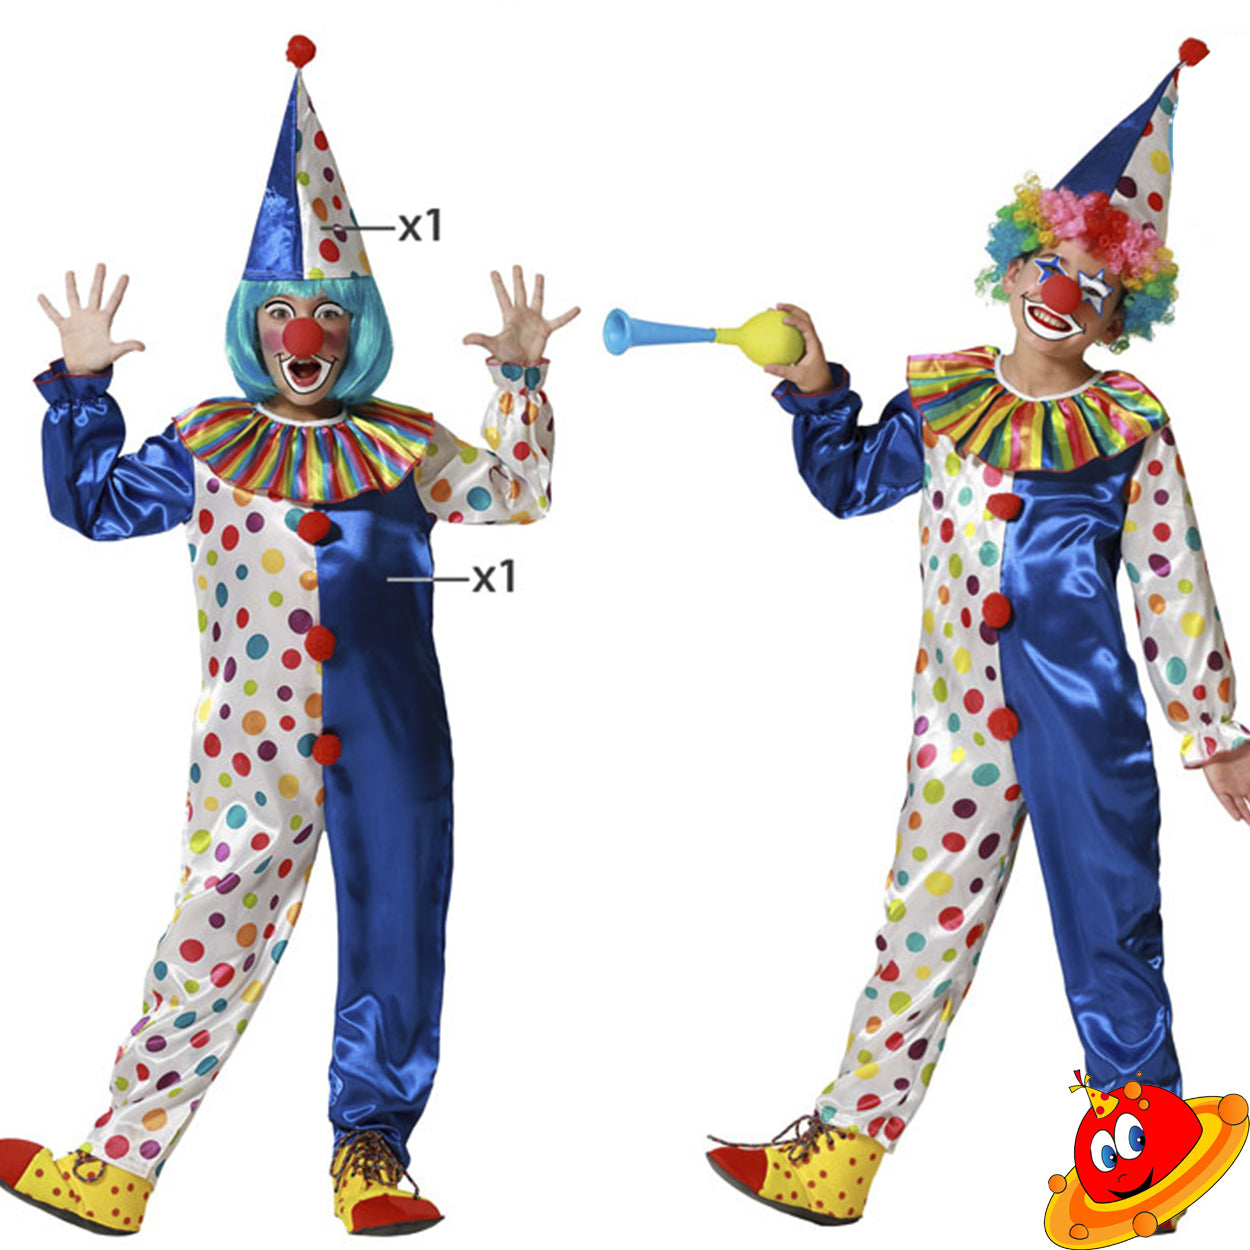 Costume Bambino Bambina tuta Clown Crazy Tg 5/12A – Universo In Festa